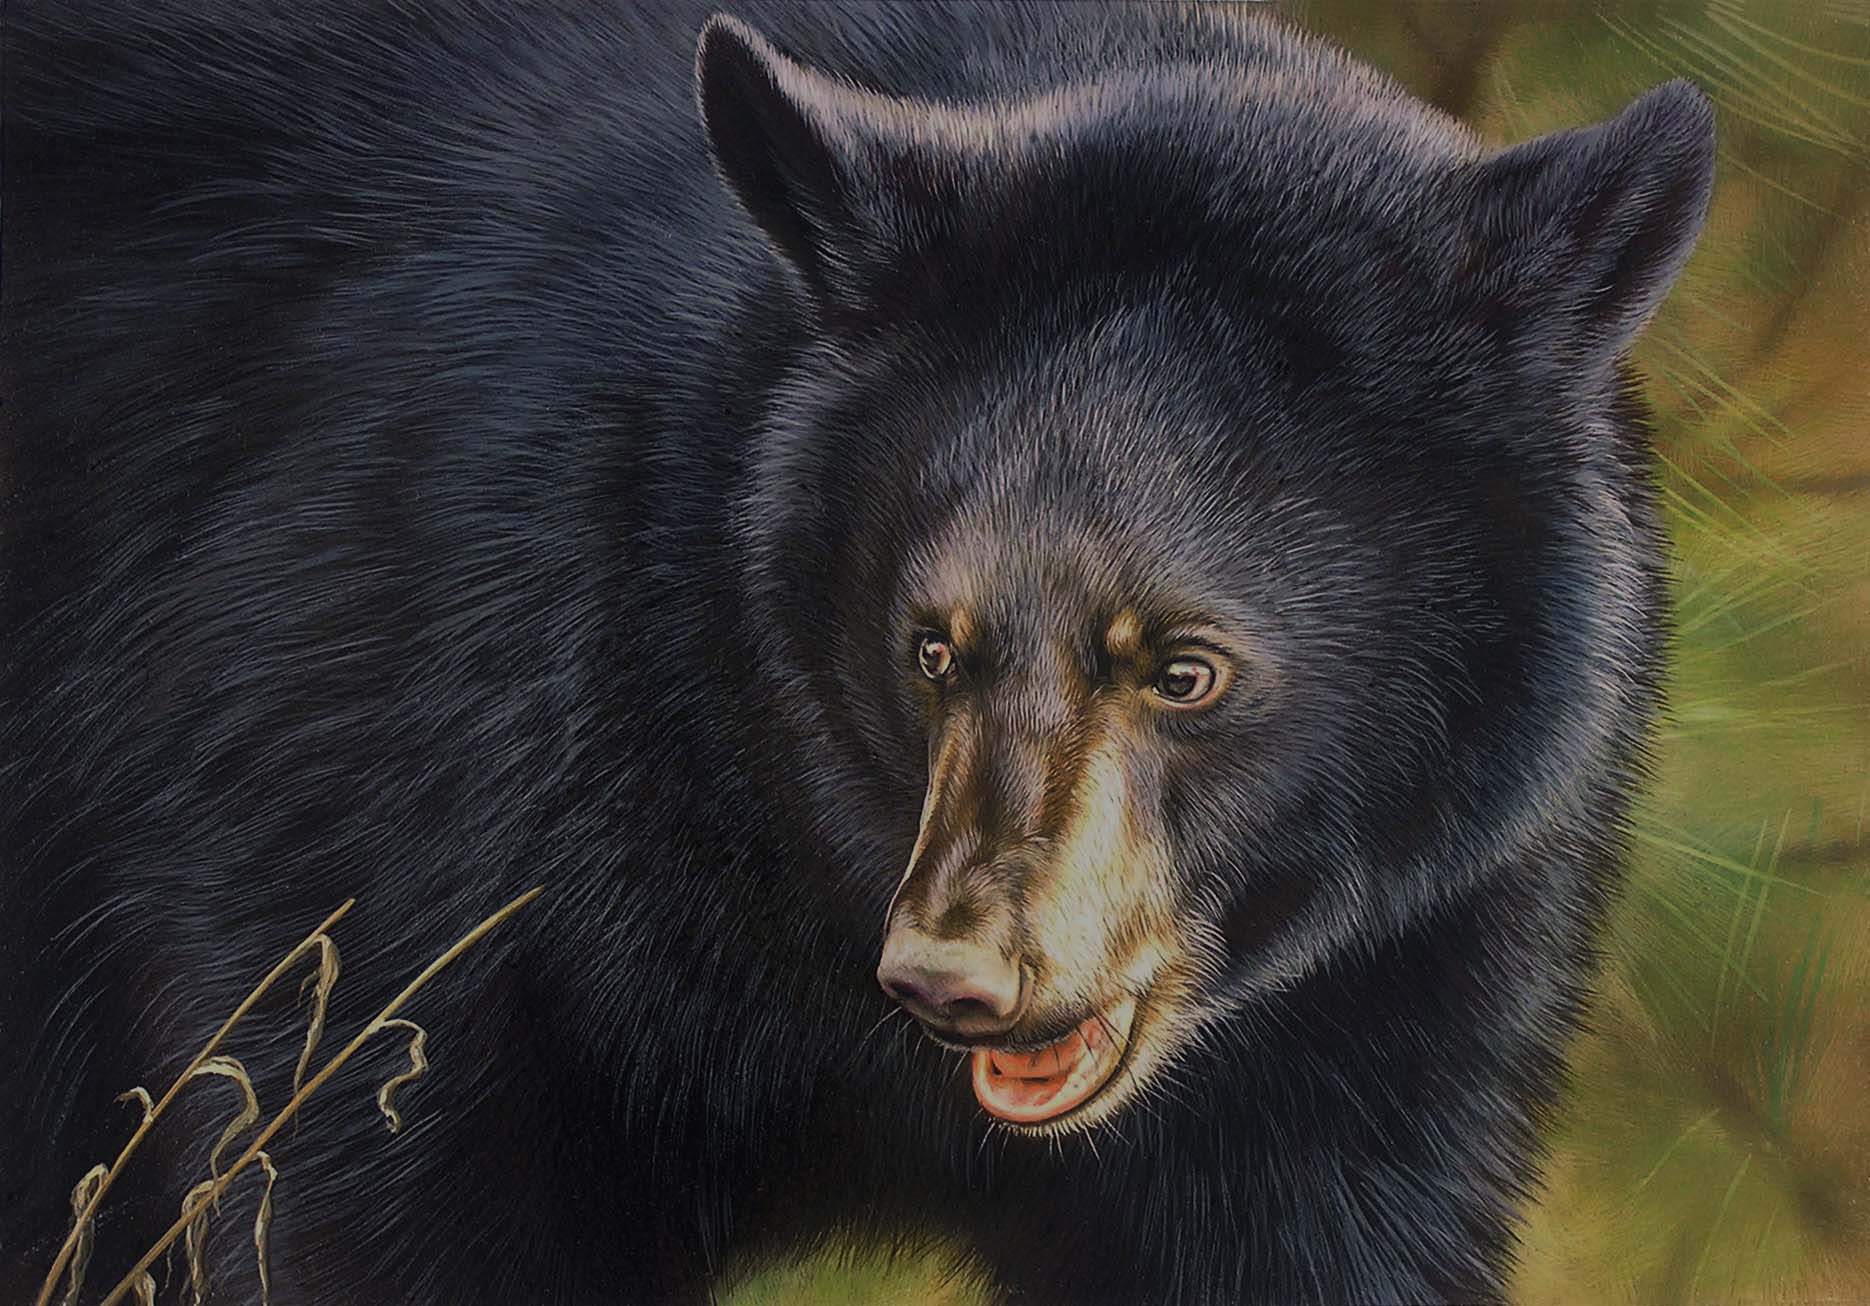 2017-2018 Maryland Black Bear Conservation Stamp winning design - by Steve Oliver